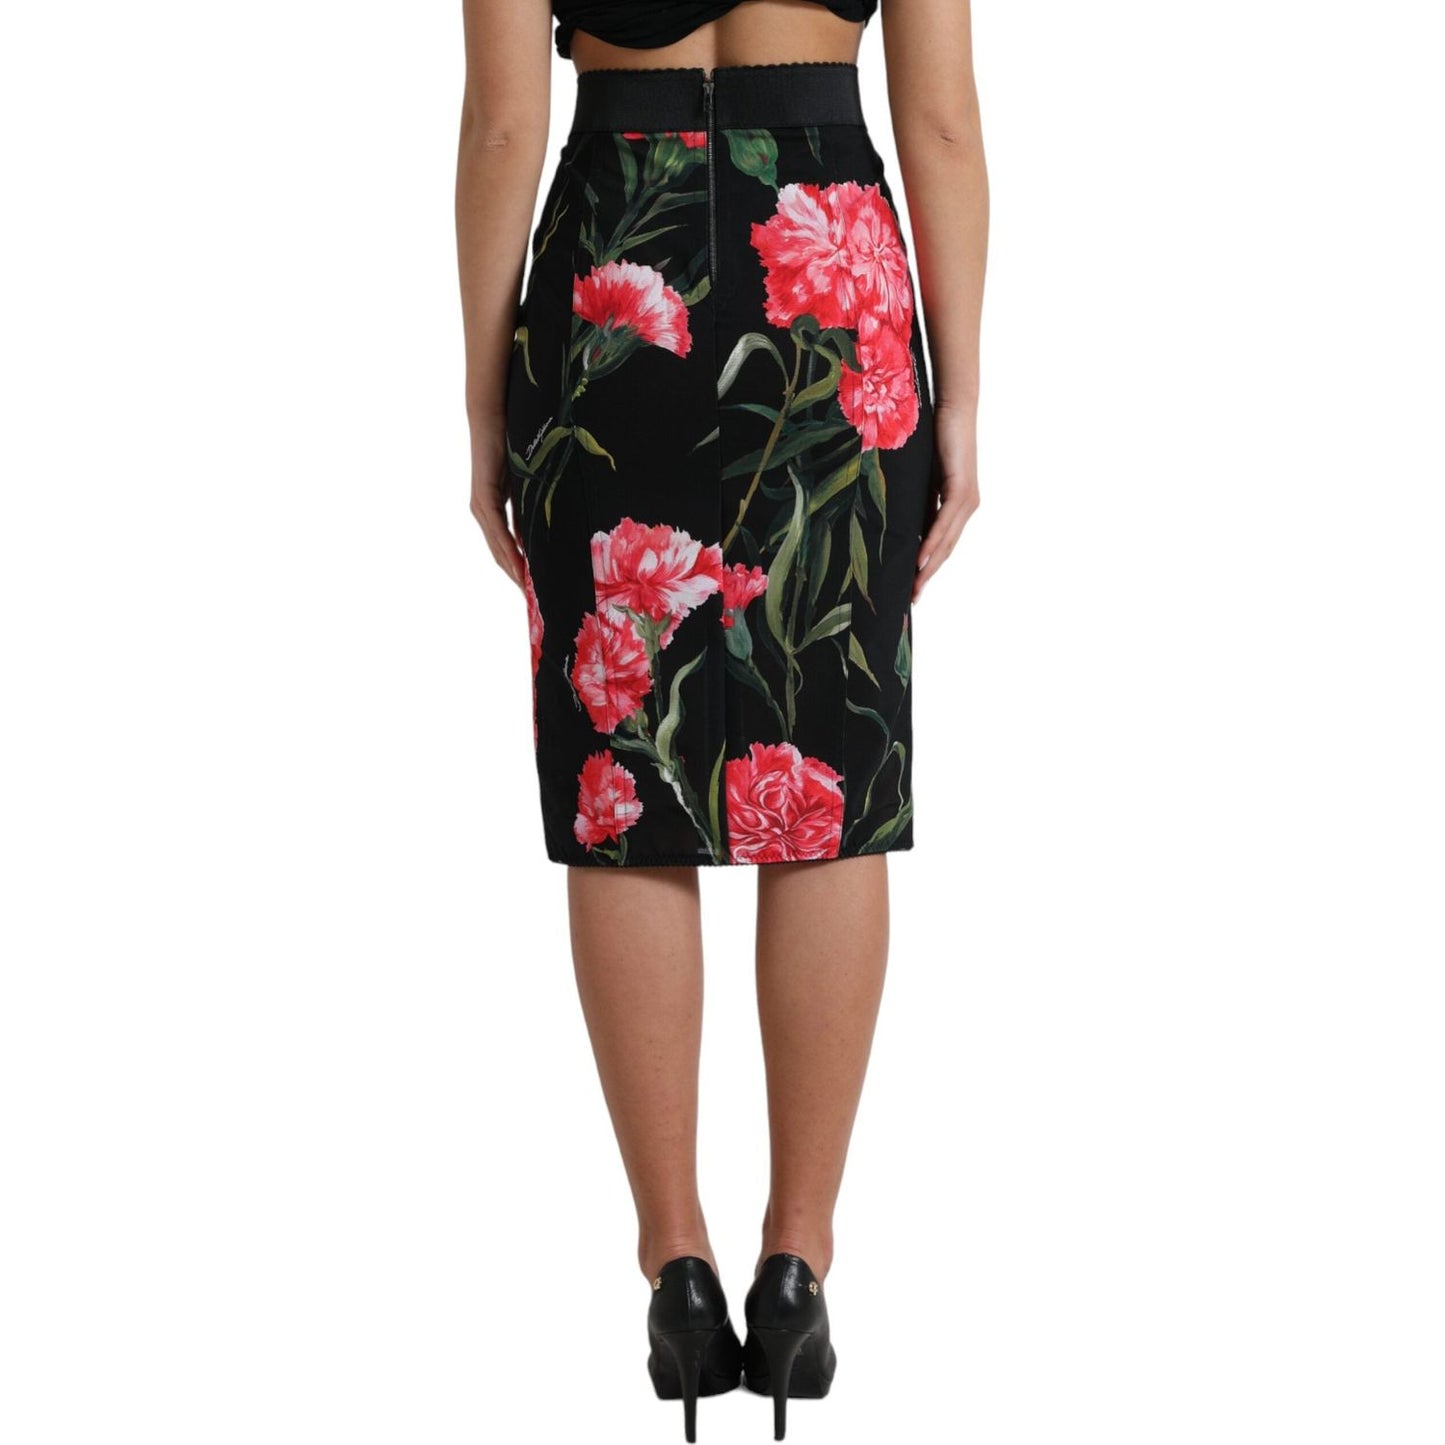 Dolce & Gabbana Floral High Waist Pencil Skirt black-carnation-pencil-cut-knee-length-skirt